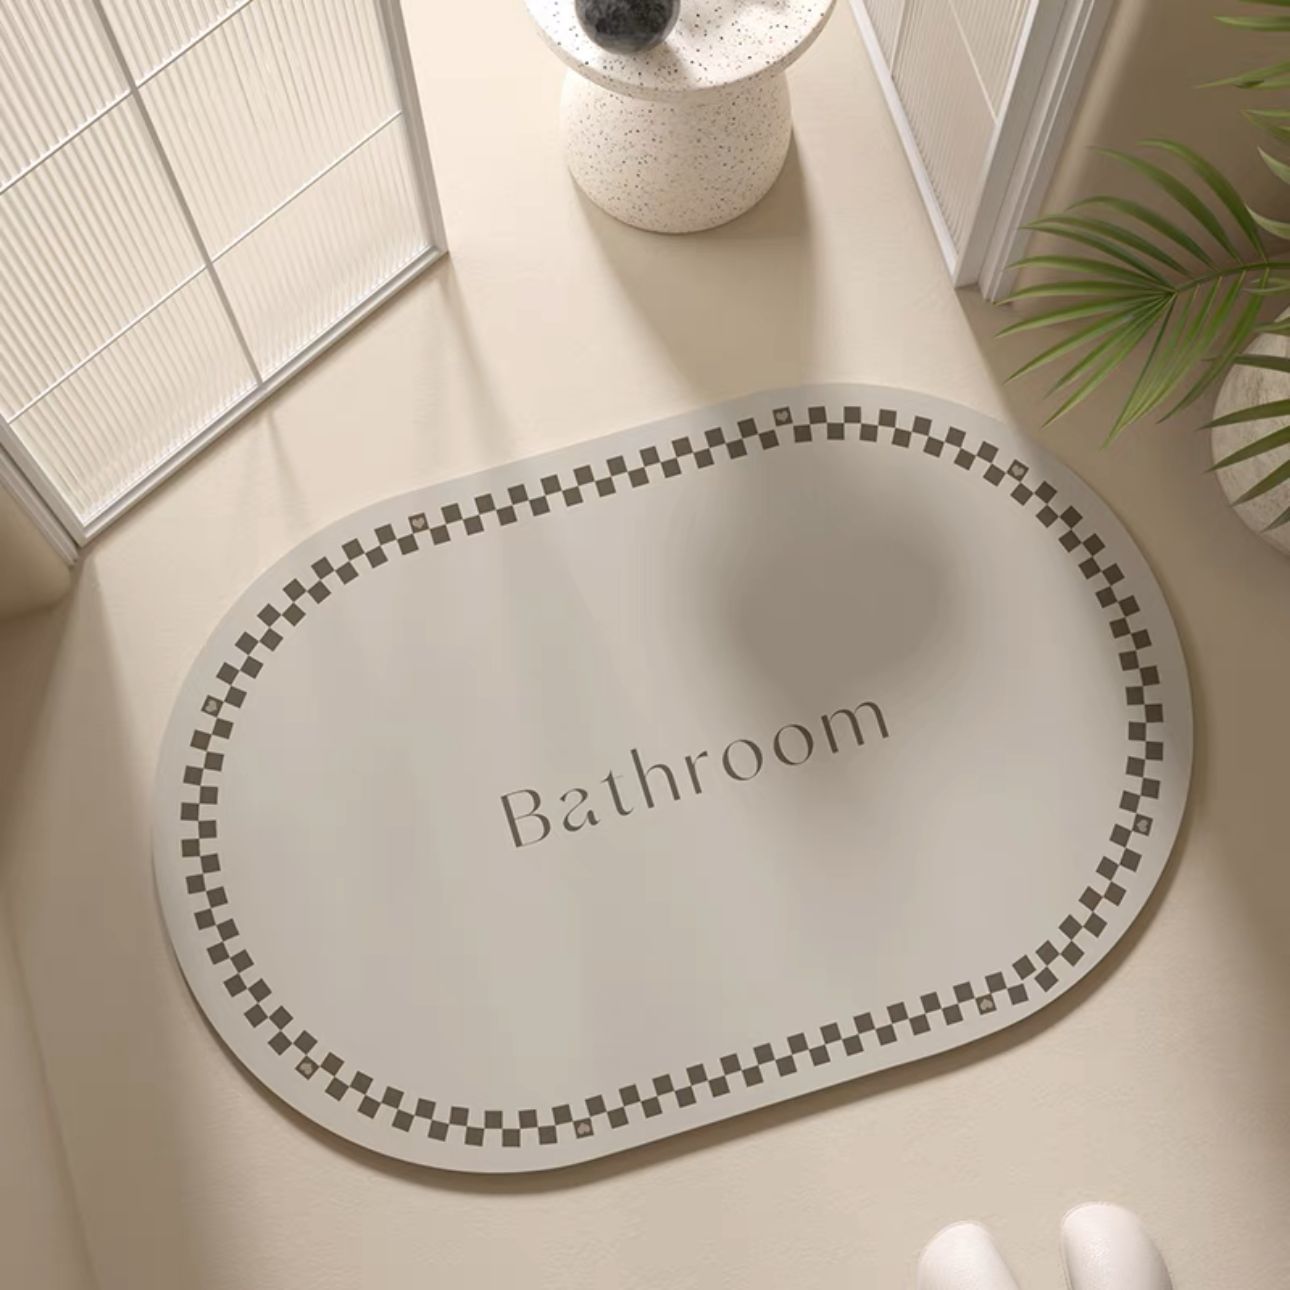 【奶乎乎】简约浴室地垫ins硅藻泥软垫吸水防滑卫生间厕所脚垫子